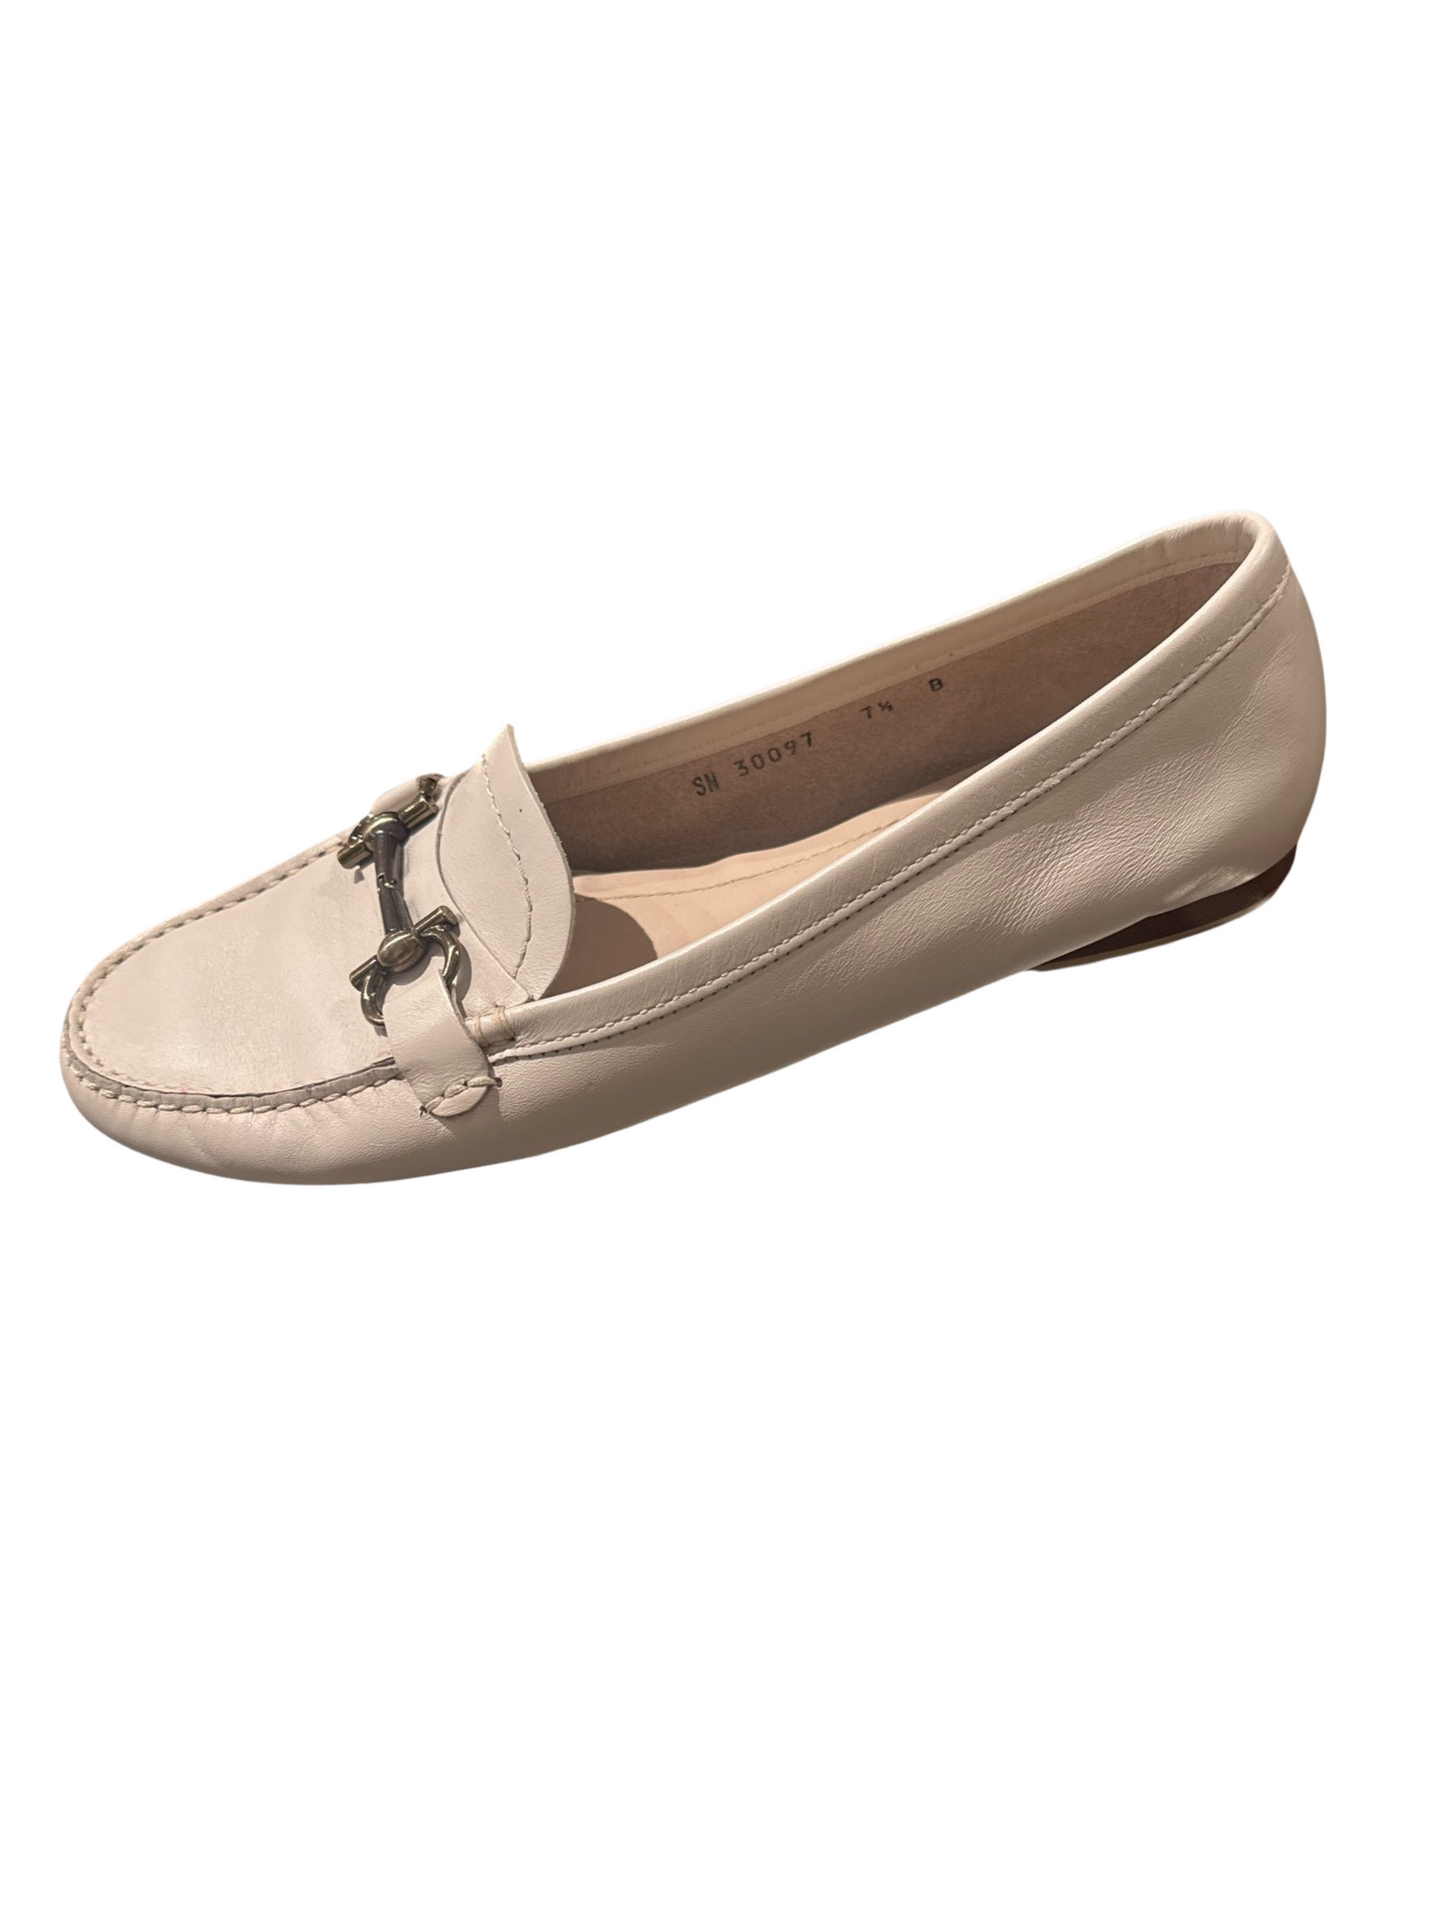 Ferragamo Loafers  Beige/PinkLeather Size 7 1/2 B